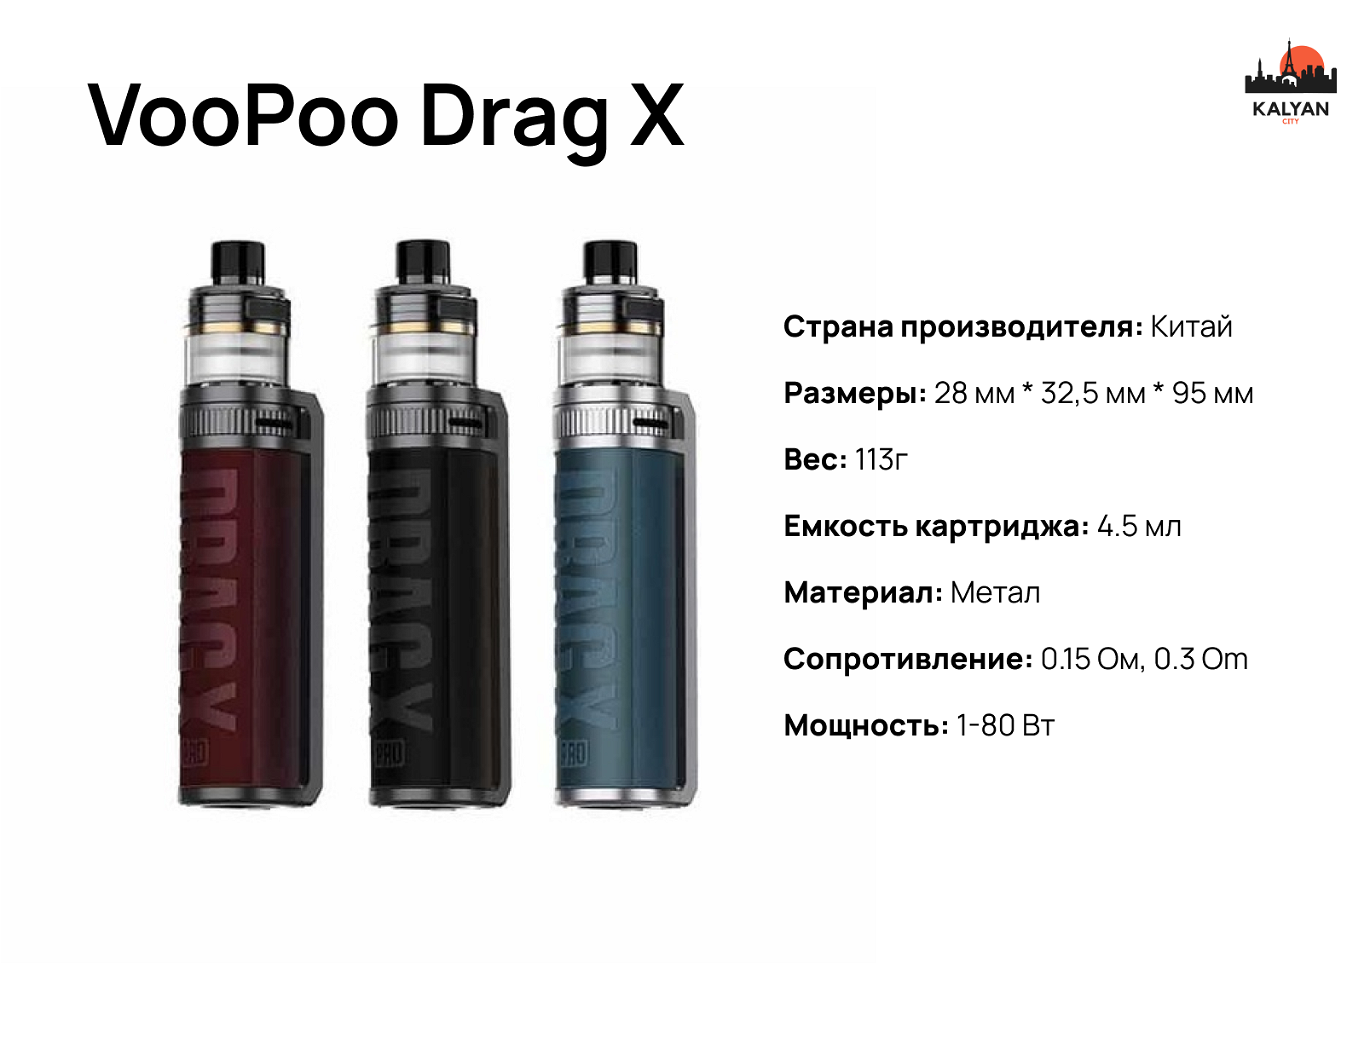 VooPoo Drag X Характеристики